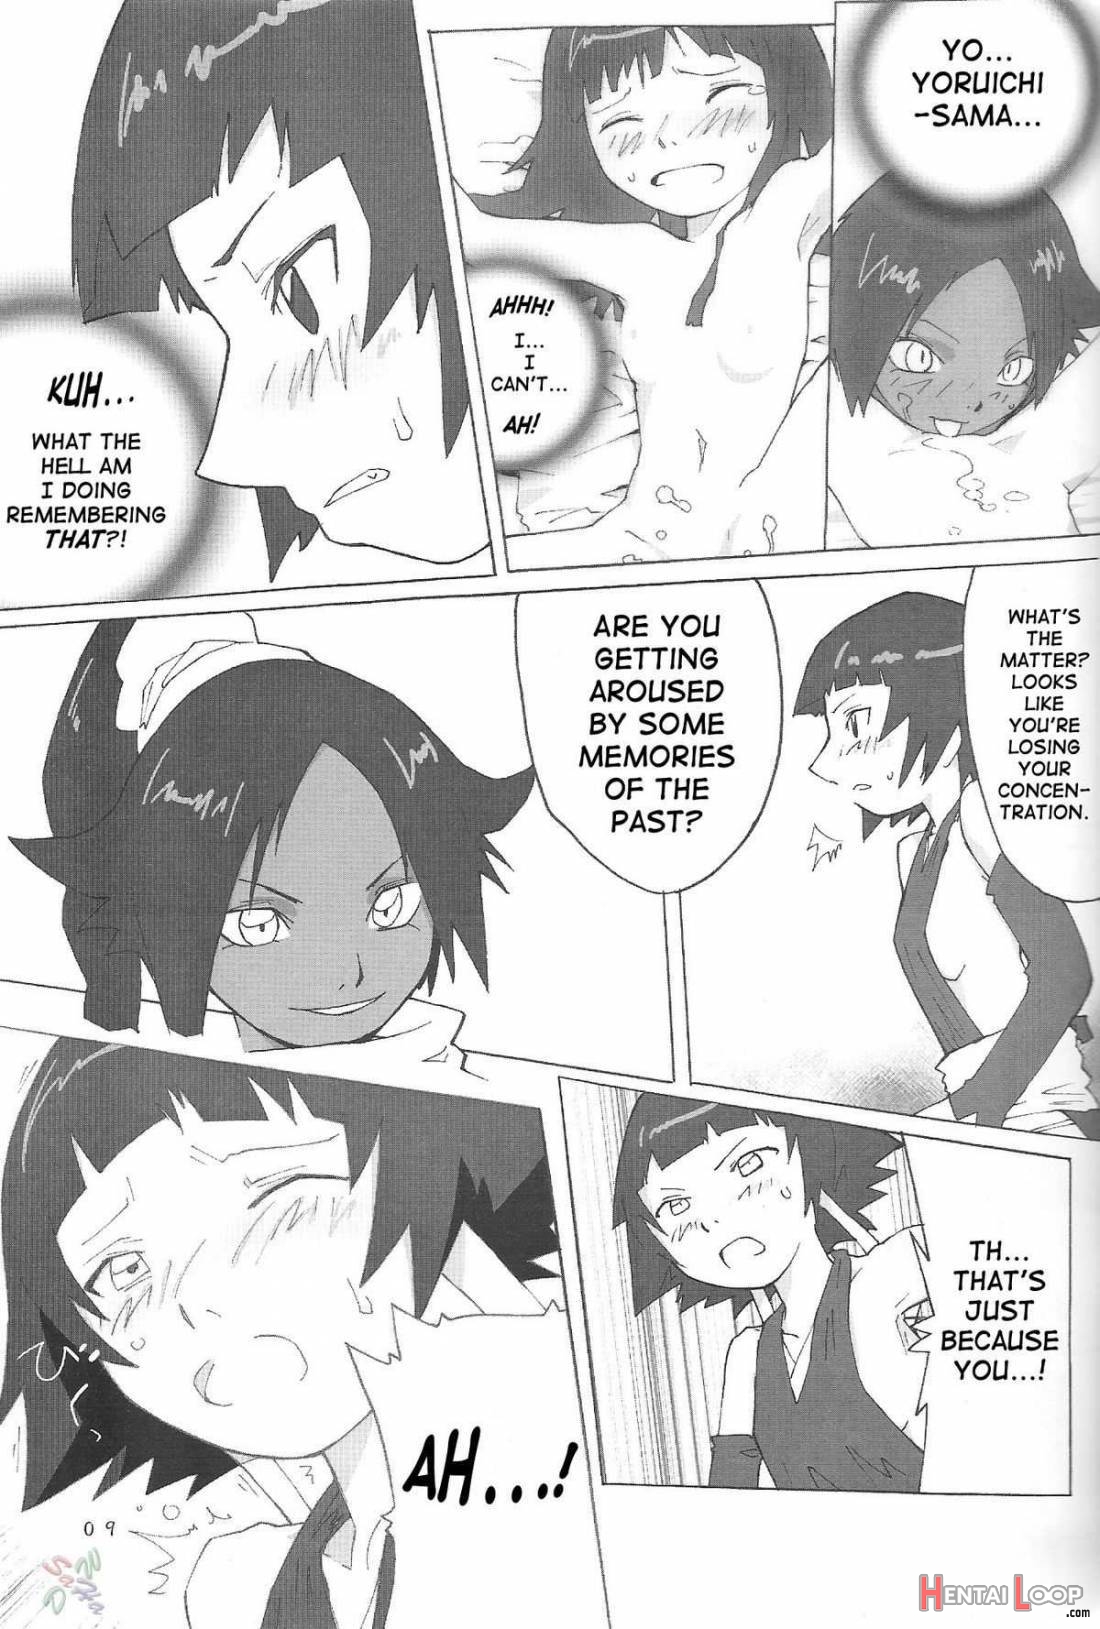 Yoruichi-sama page 8